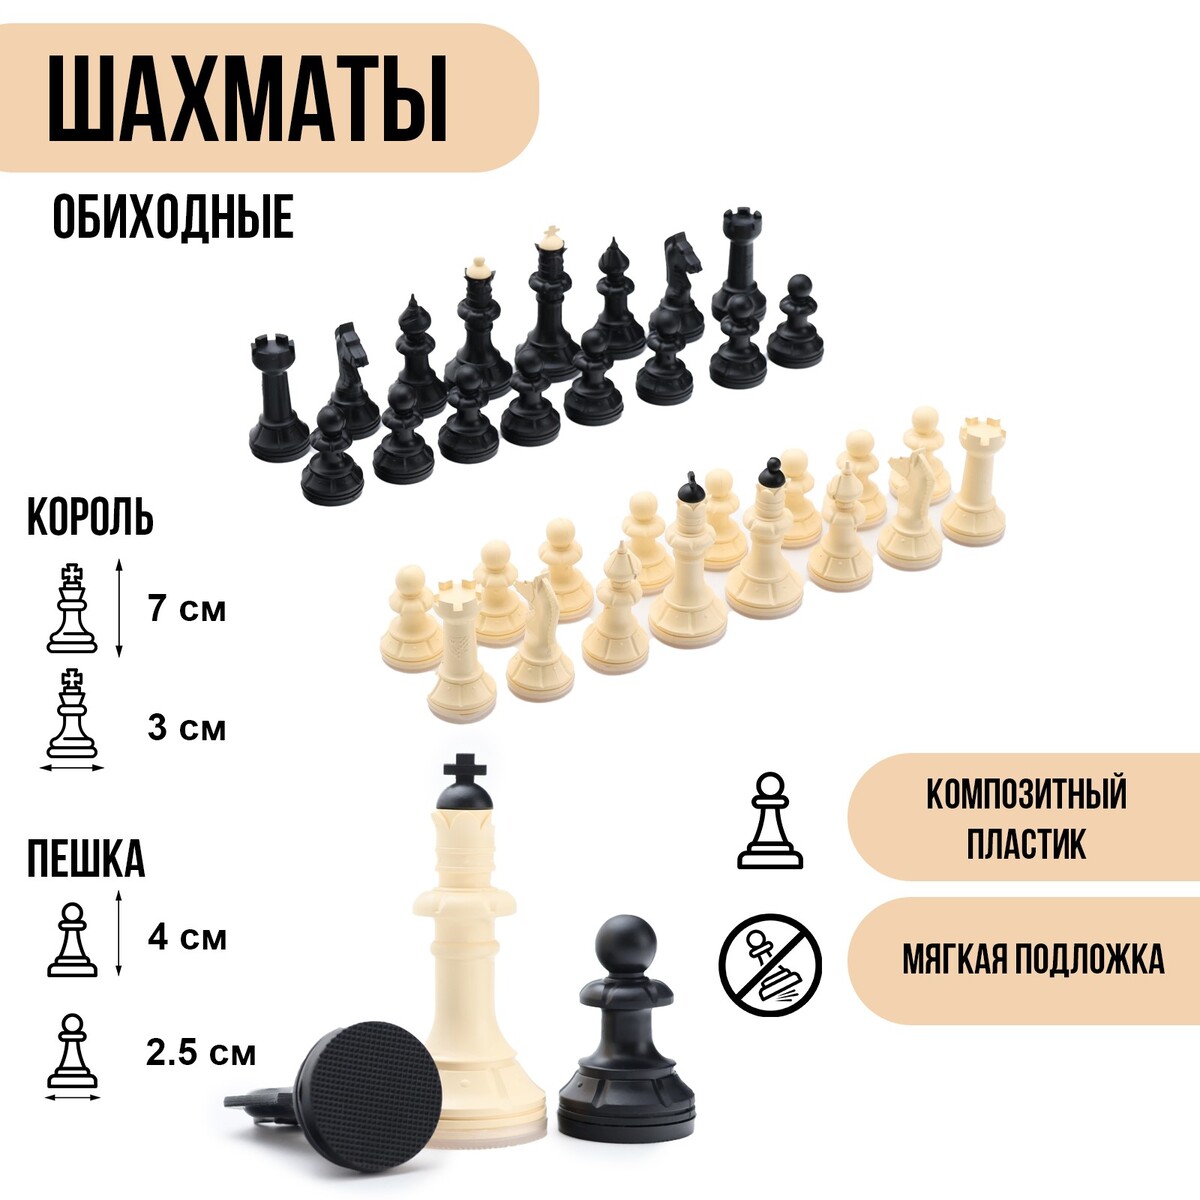 Шахматные фигуры обиходные, король h=7 см, пешка-4 см, пластик шахматные фигуры гроссмейстерские